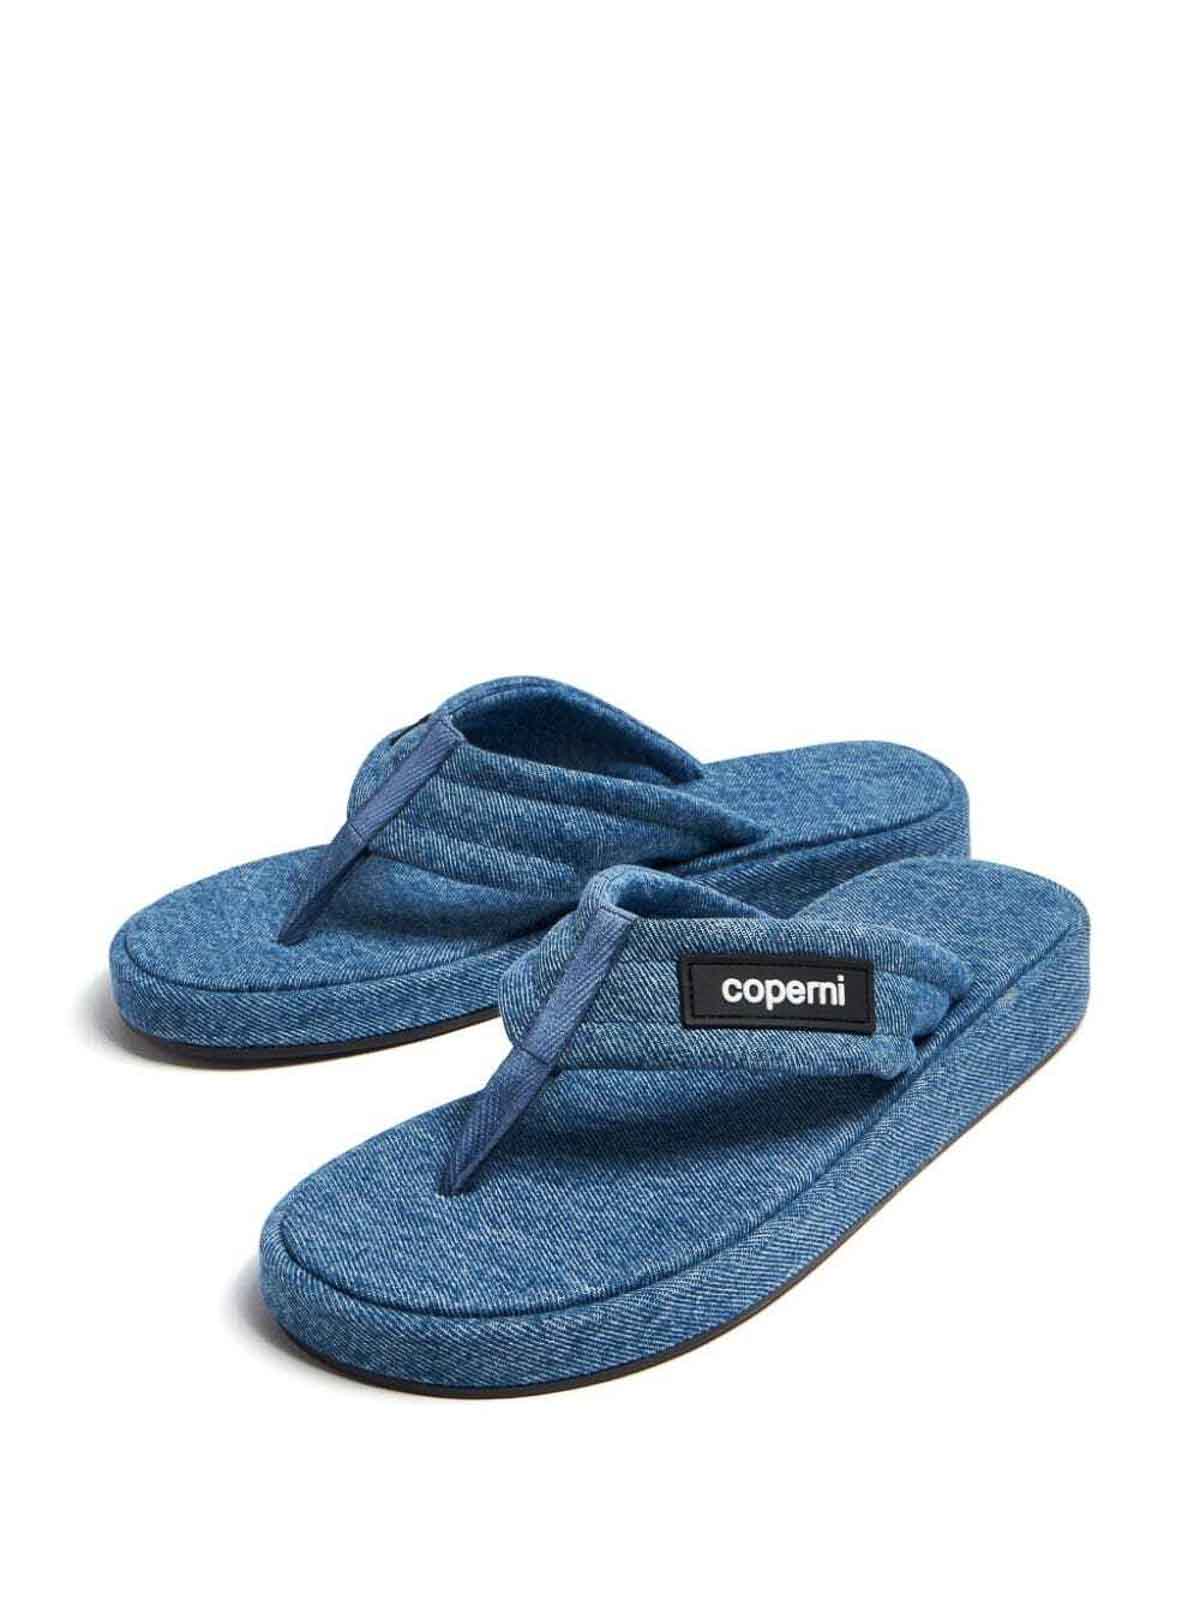 Shop Coperni Zapatos Clásicos - Lavado Medio In Medium Wash